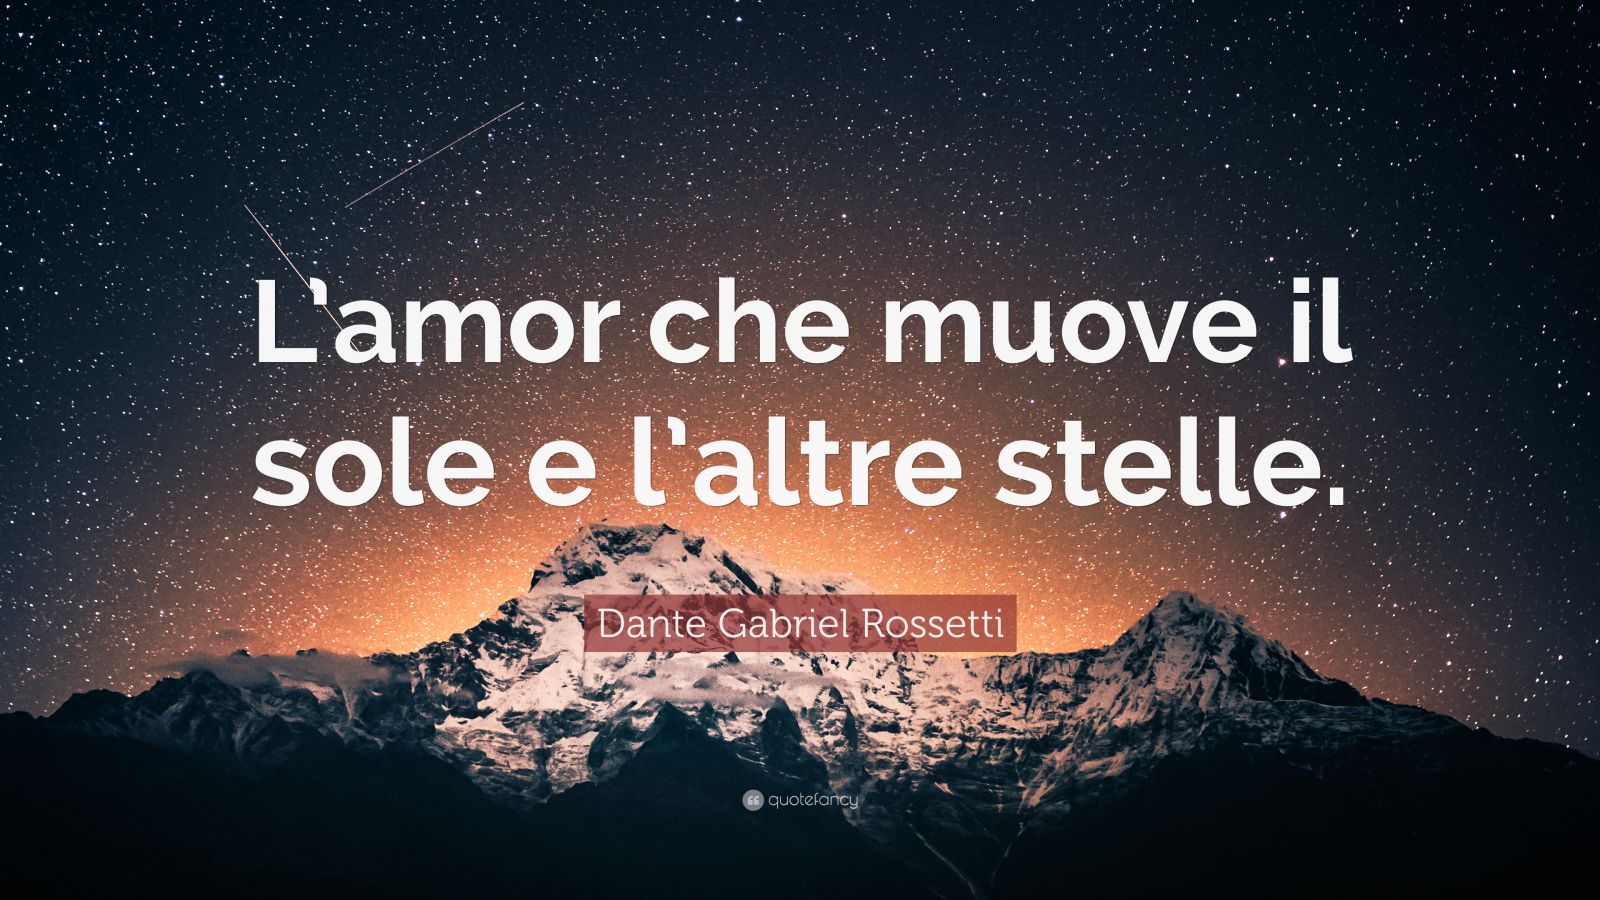 Dante Gabriel Rossetti Quote: “L’amor che muove il sole e l’altre stelle.”